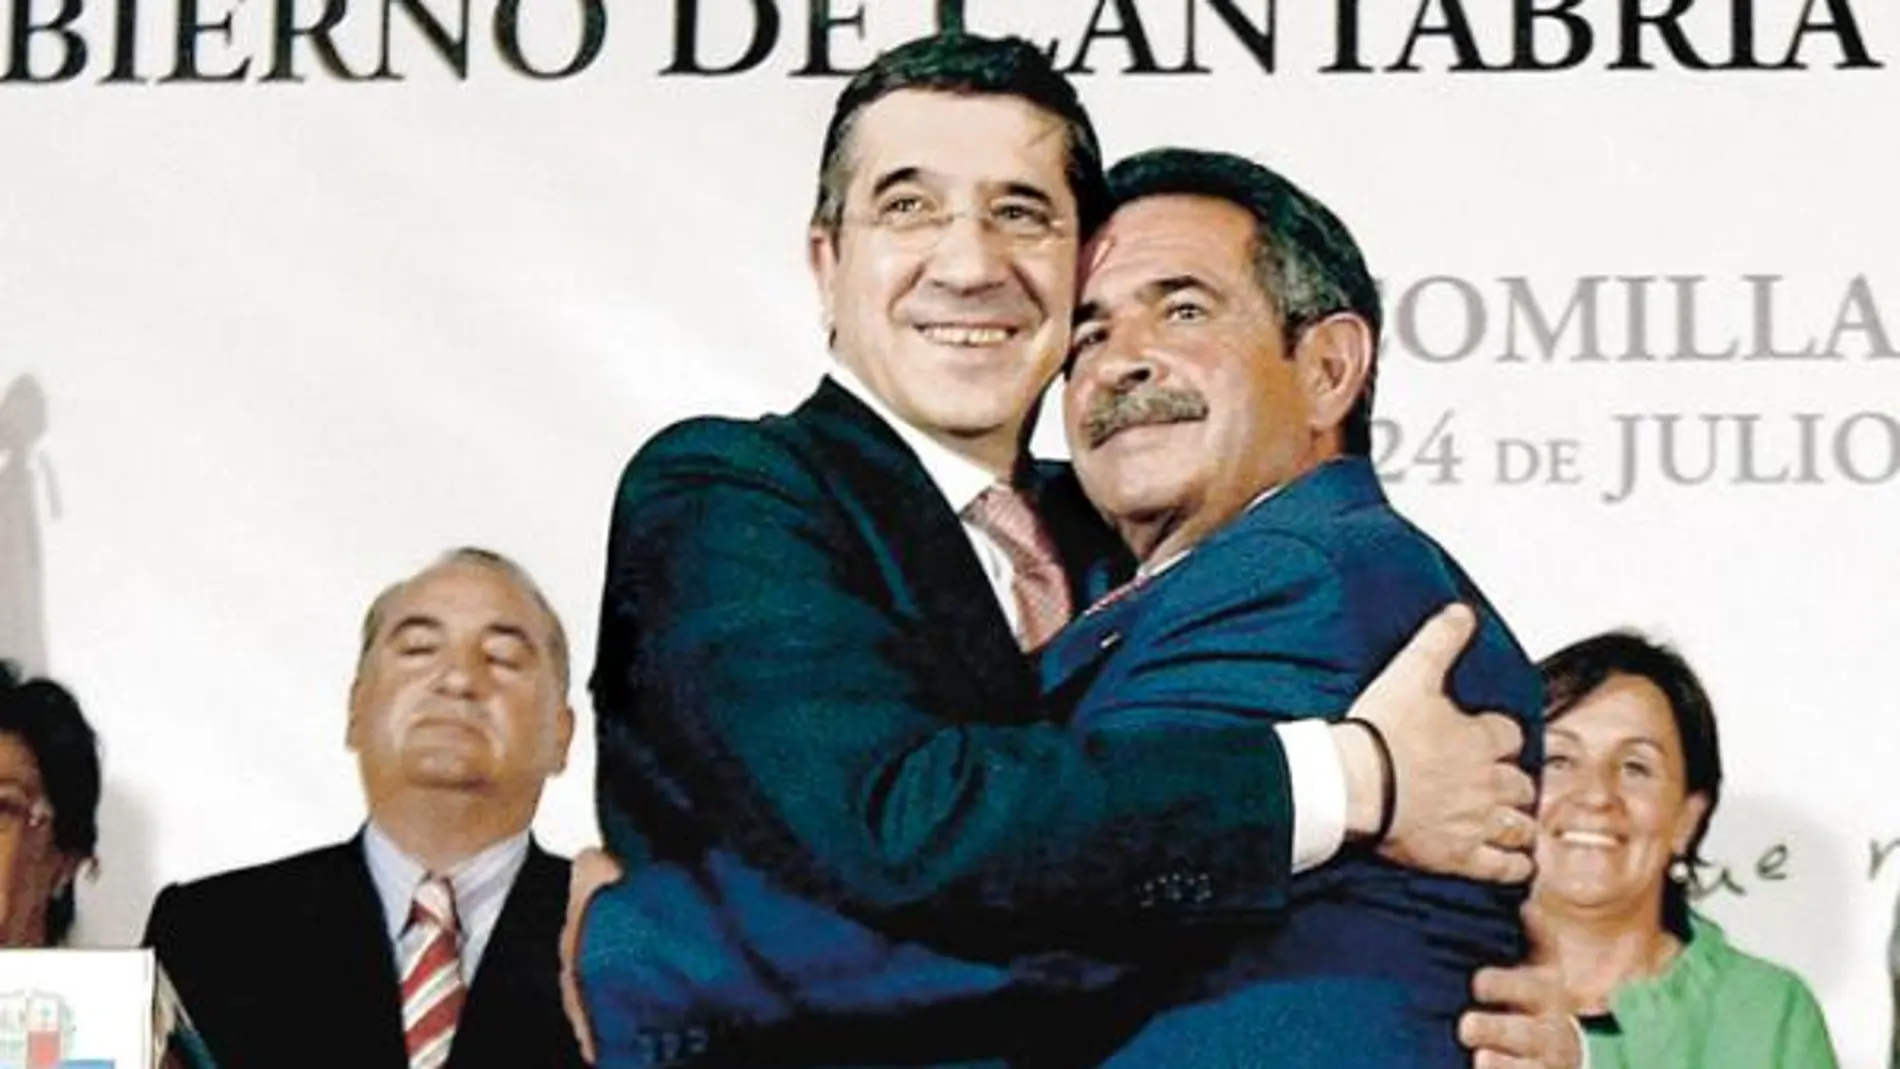 El lendakari, Patxi López, ayer, junto al presidente de Cantabria, Miguel Ángel Revilla